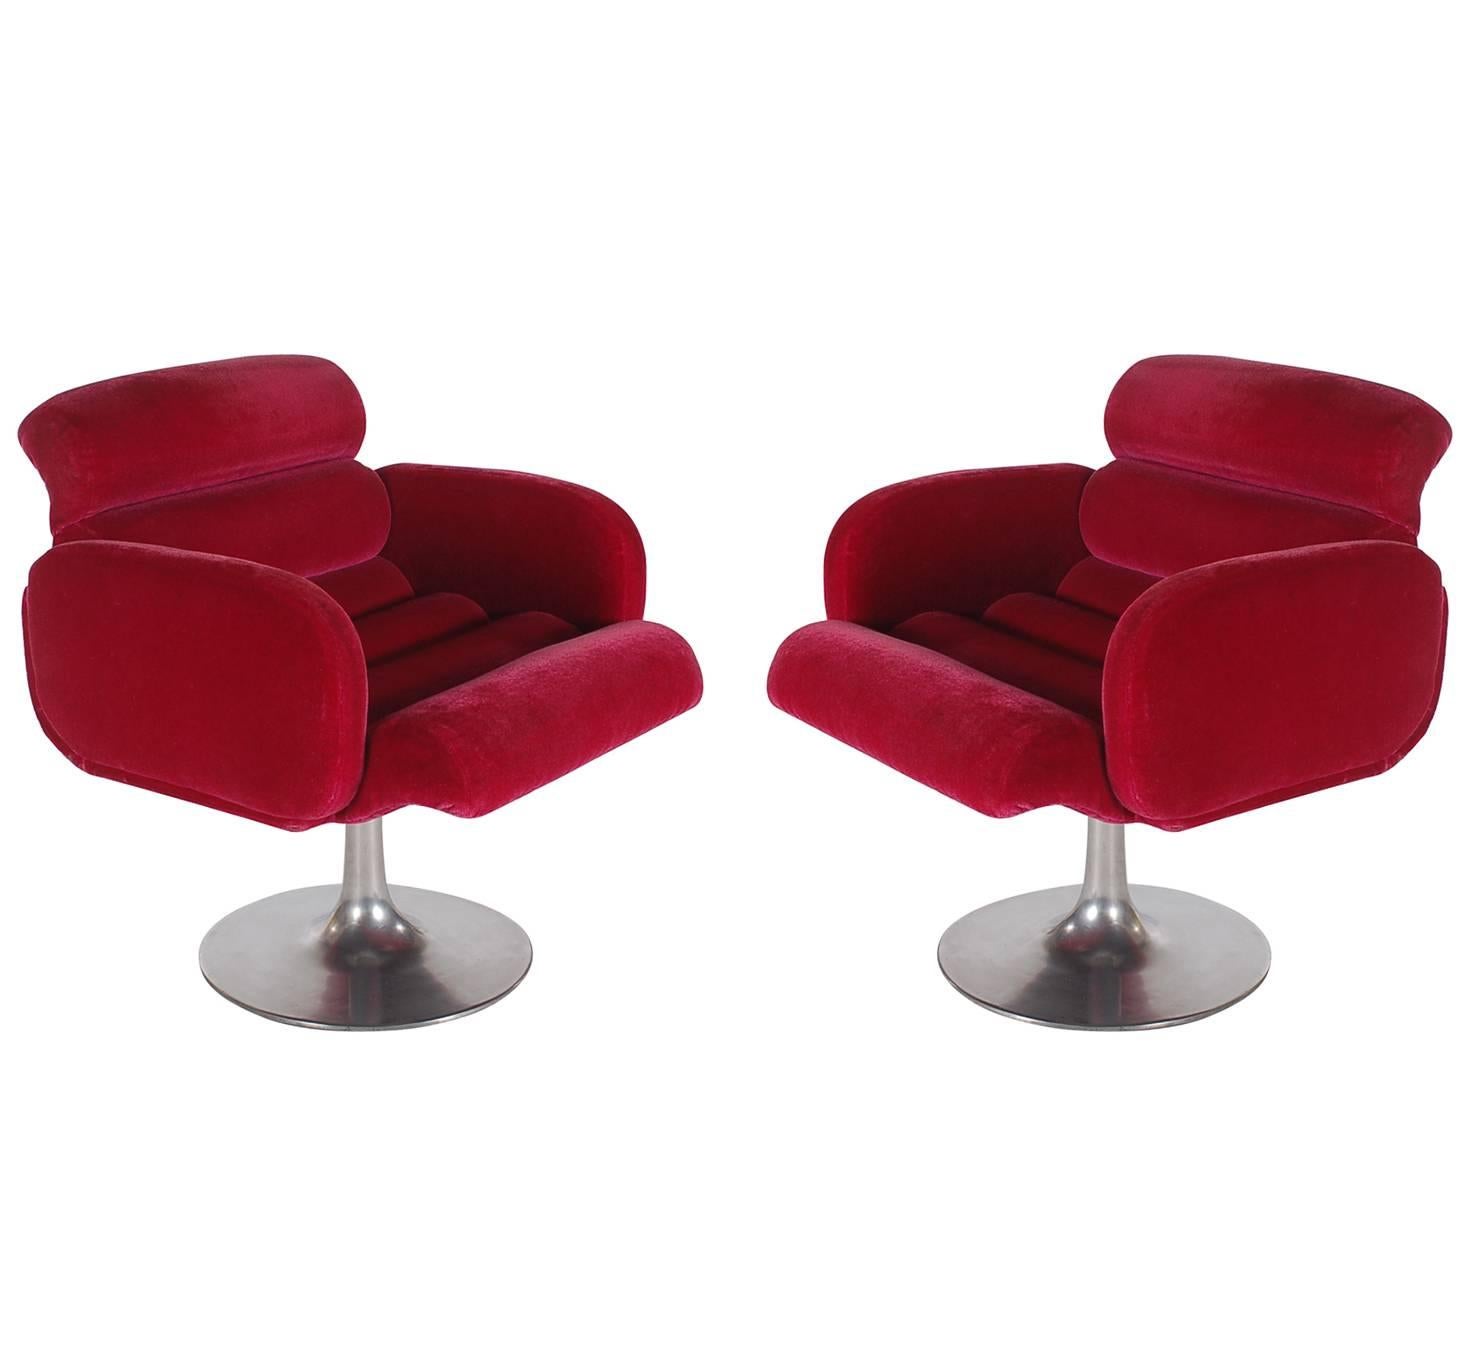 Ein interessantes Paar passender Drehsessel, entworfen von Stendig und hergestellt in den 1960er Jahren. Die Sitze sind mit rotem Samt gepolstert und haben ein Tulpengestell aus Aluminium. 

Im Stil von: Milo Baughman oder Pierre Paulin.